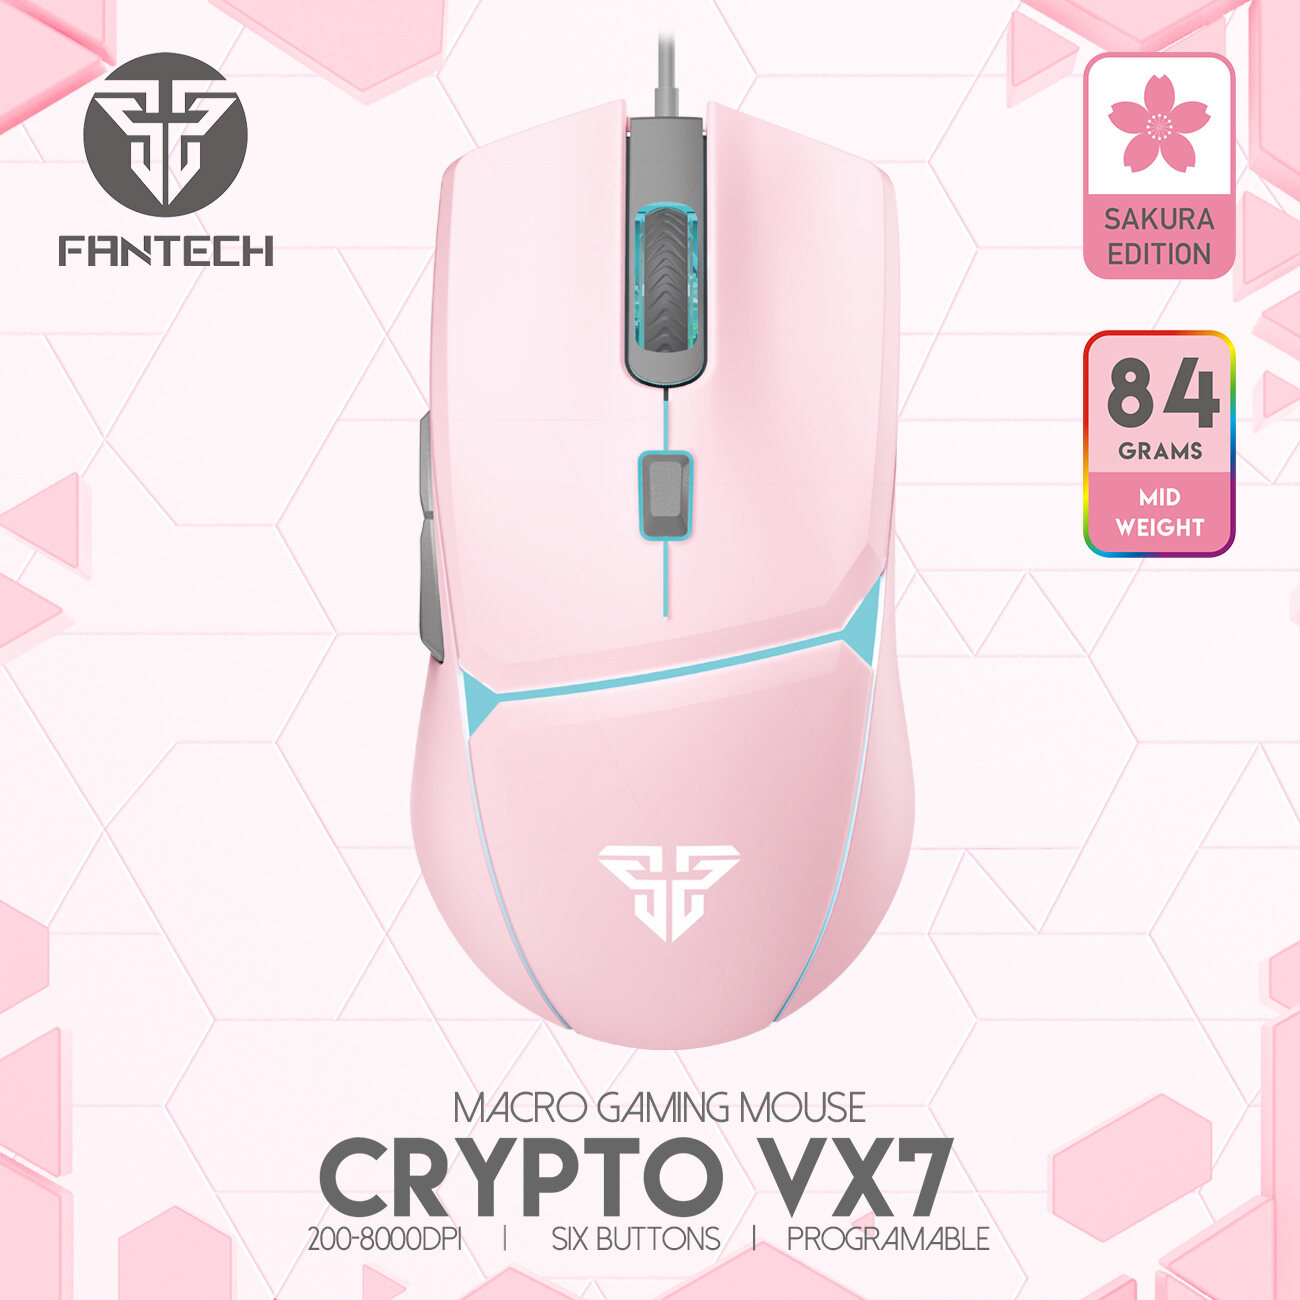 Fantech Vx7 Crypto Macro Key Gaming Mouse รุ่น Vx7 เมาส์เกมมิ่ง แฟนเทค ความแม่นยำปรับ Dpi 200-8000 ปรับ มาโคร ได้ถึง 6 ปุ่ม เหมาะกับเกมส์ Mmorp. 